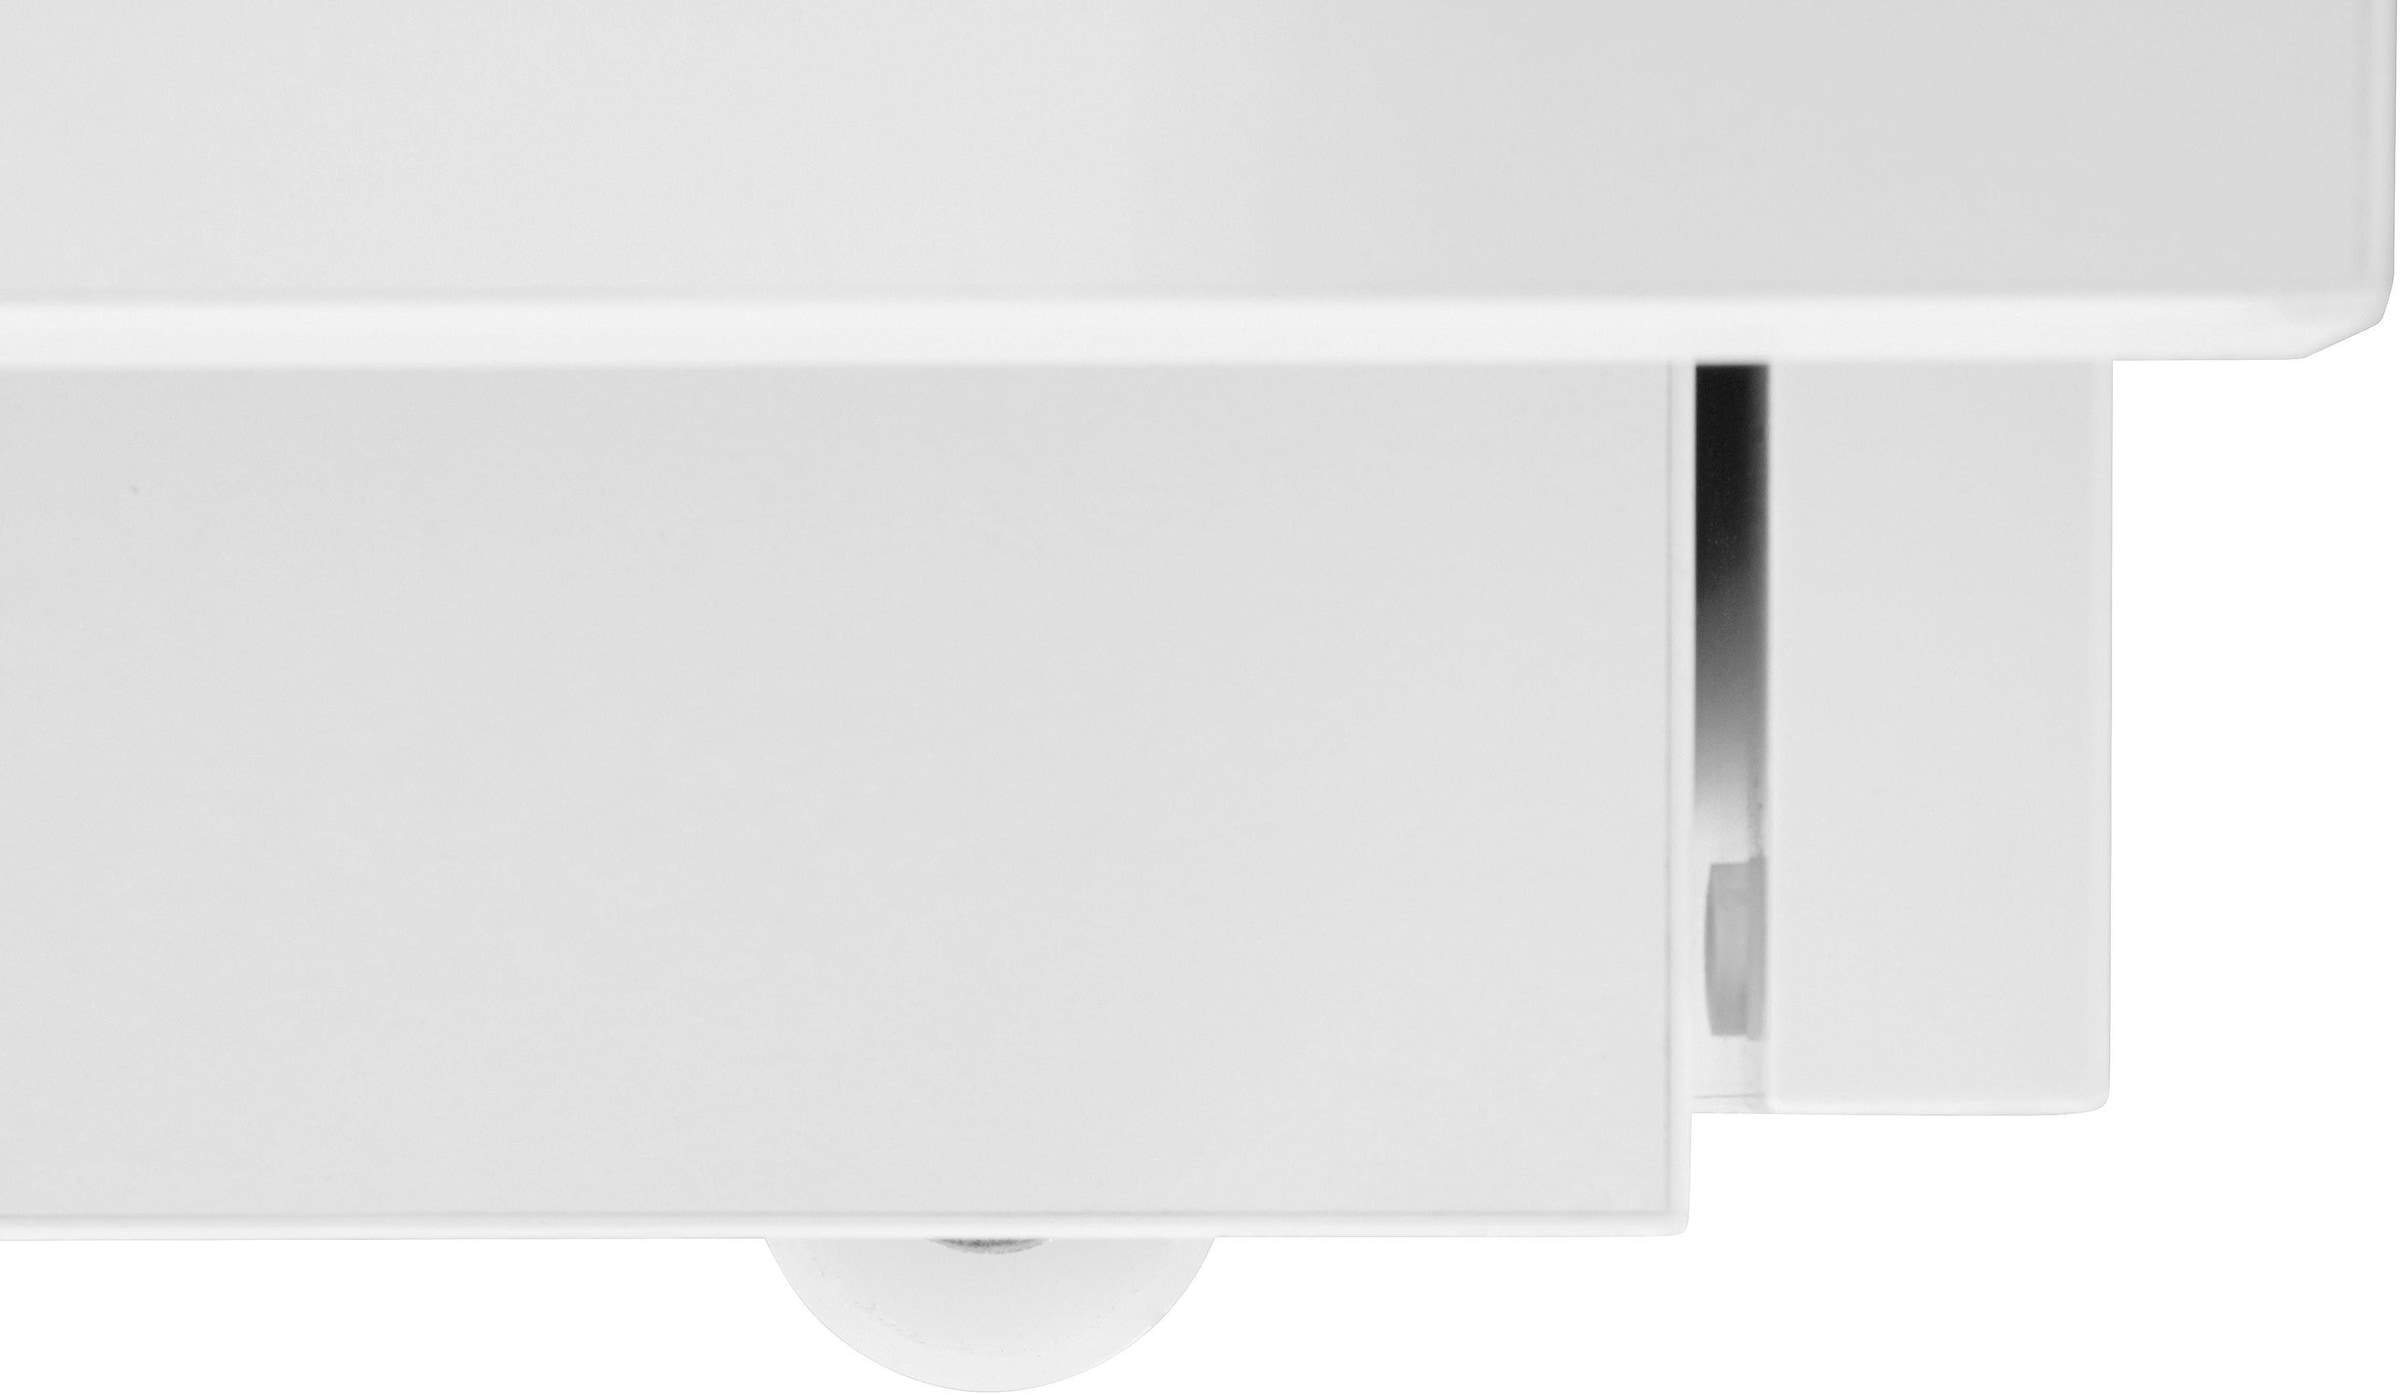 Woodman Esstisch »Jasper«, mit einer rechteckigen Tischplatte und Auszugsfunktion, Breite 90 cm